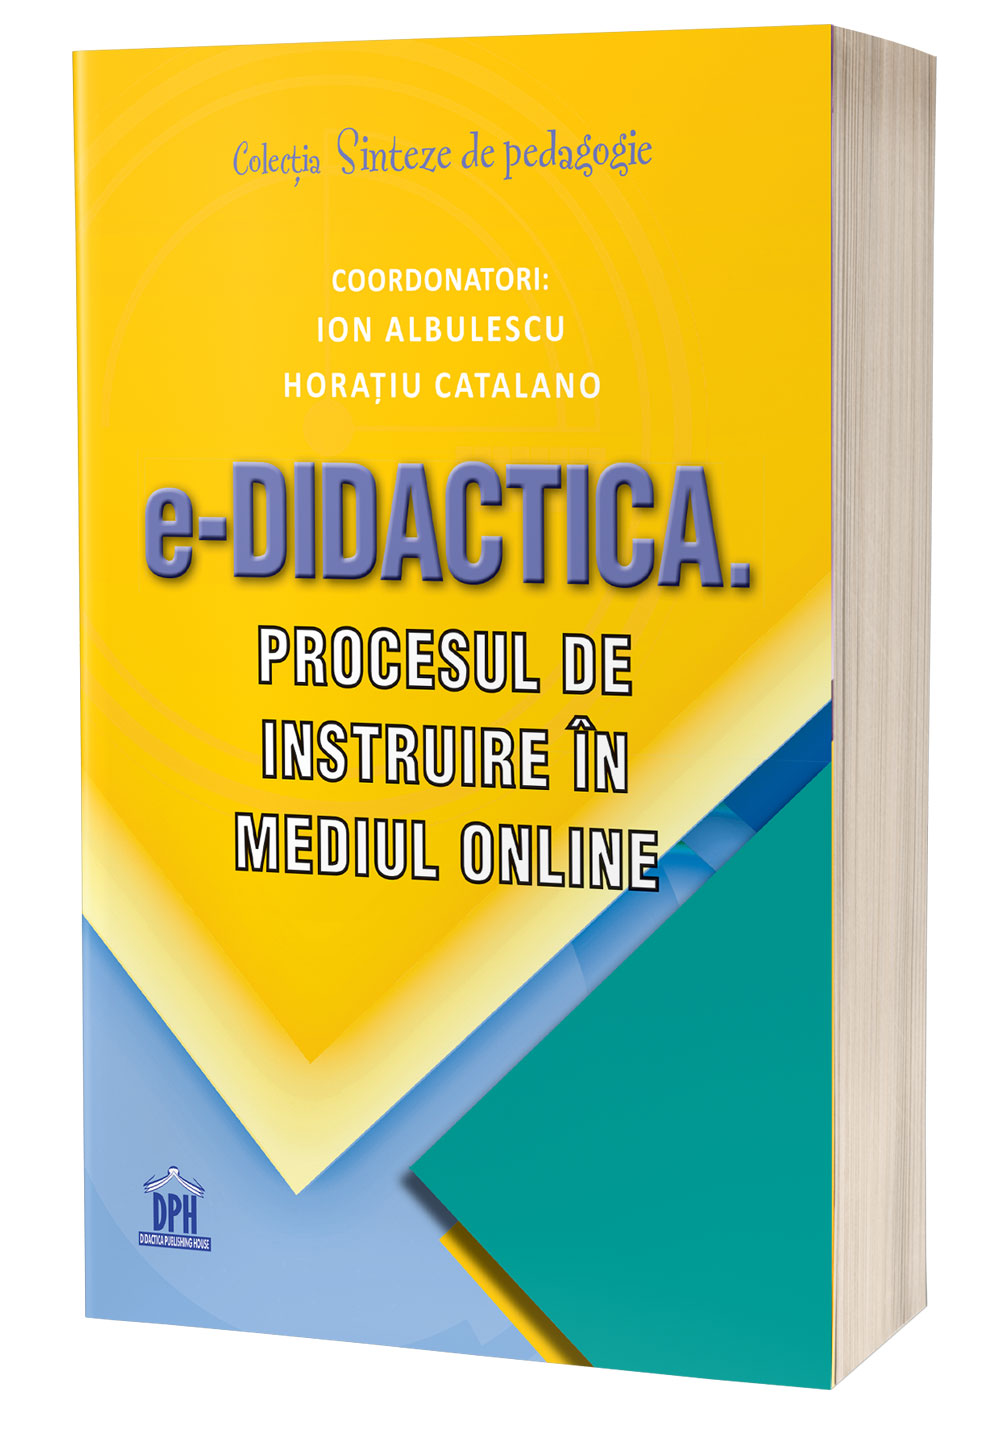 EDIDACTICA_C1-3D